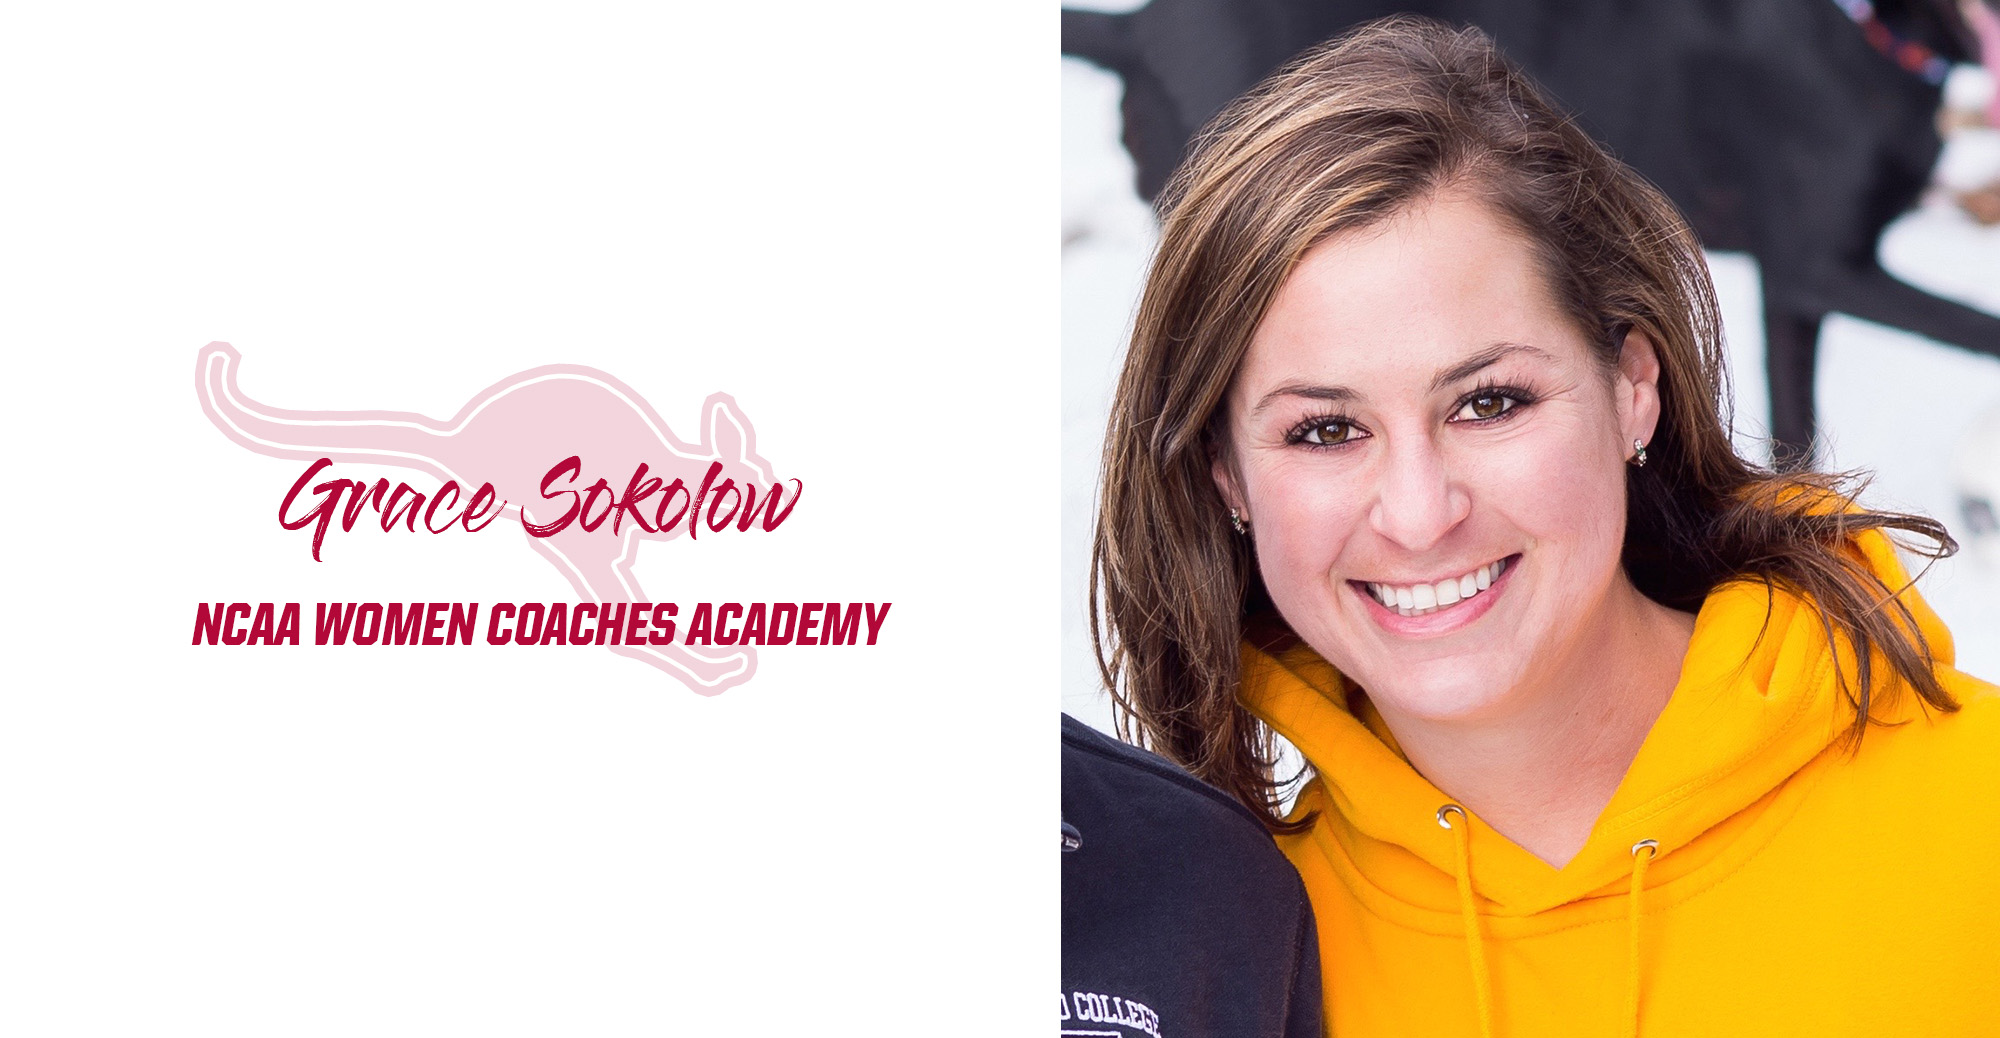 Sokolow Selected for NCAA Women Coaches Academy